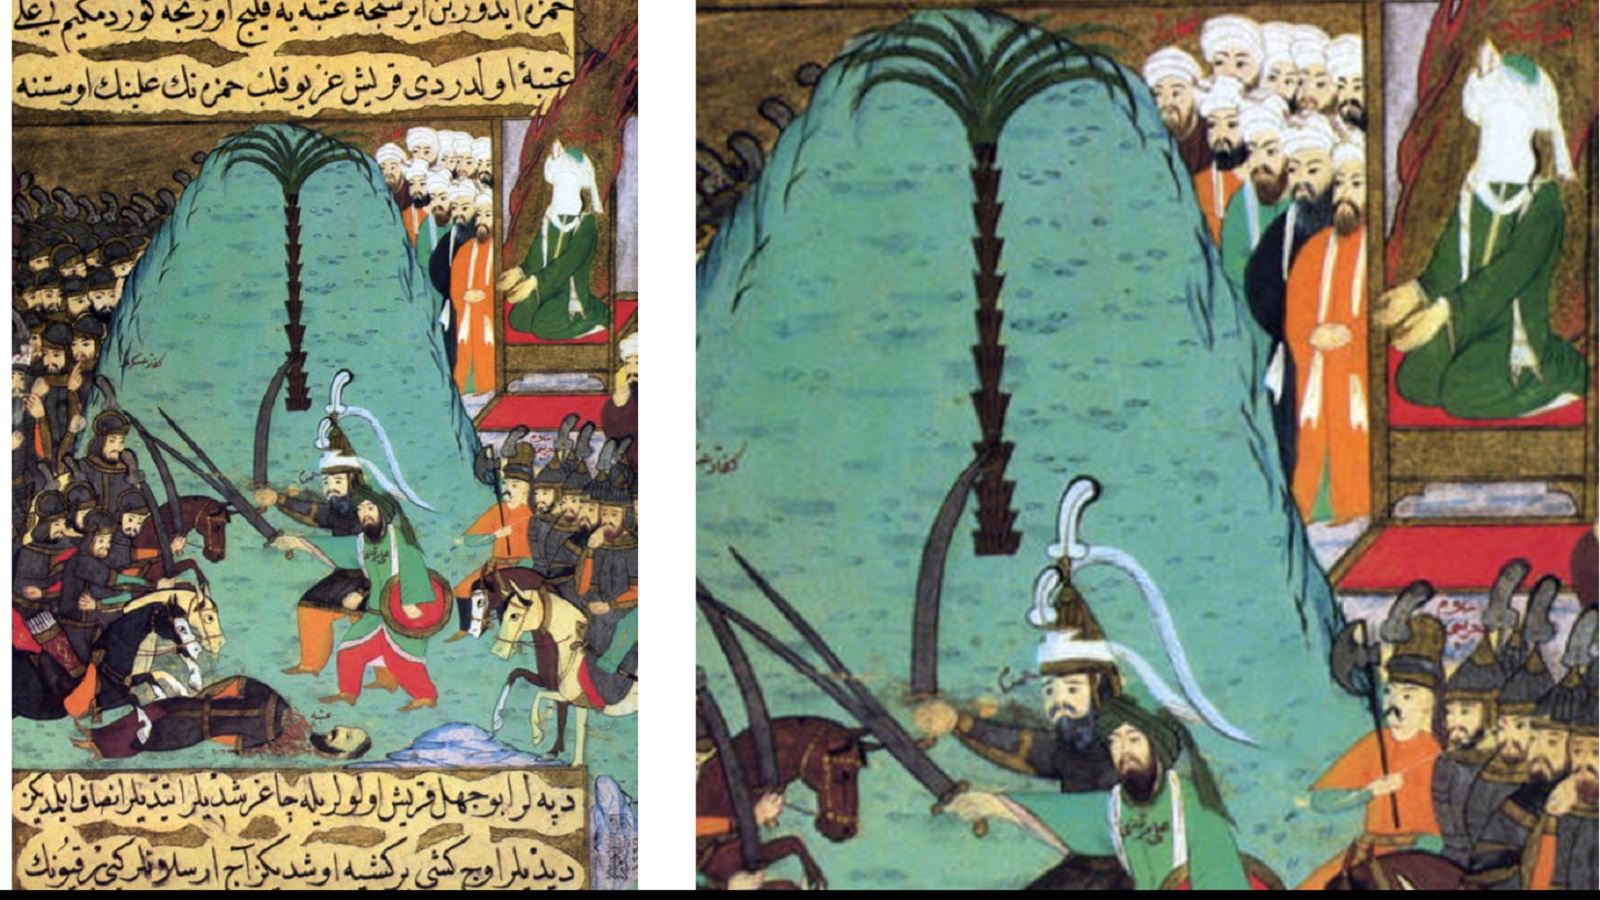 المبارزة التي سبقت معركة بدر الكبرى، "سير النبي"، اسطنبول، نهاية القرن السادس عشر، توبكابي.